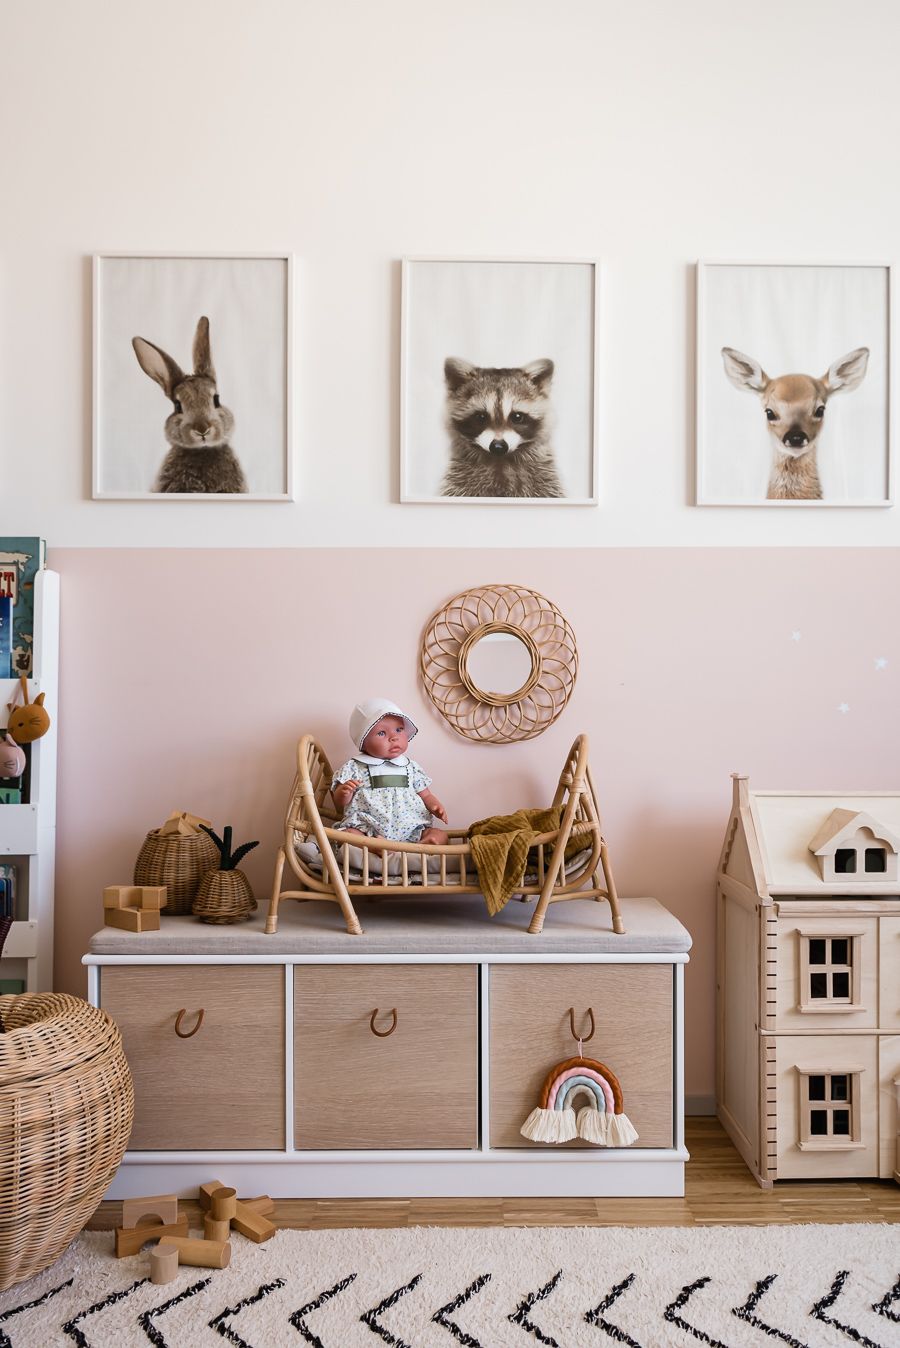 Esta es la habitación infantil más encantadora de Instagram